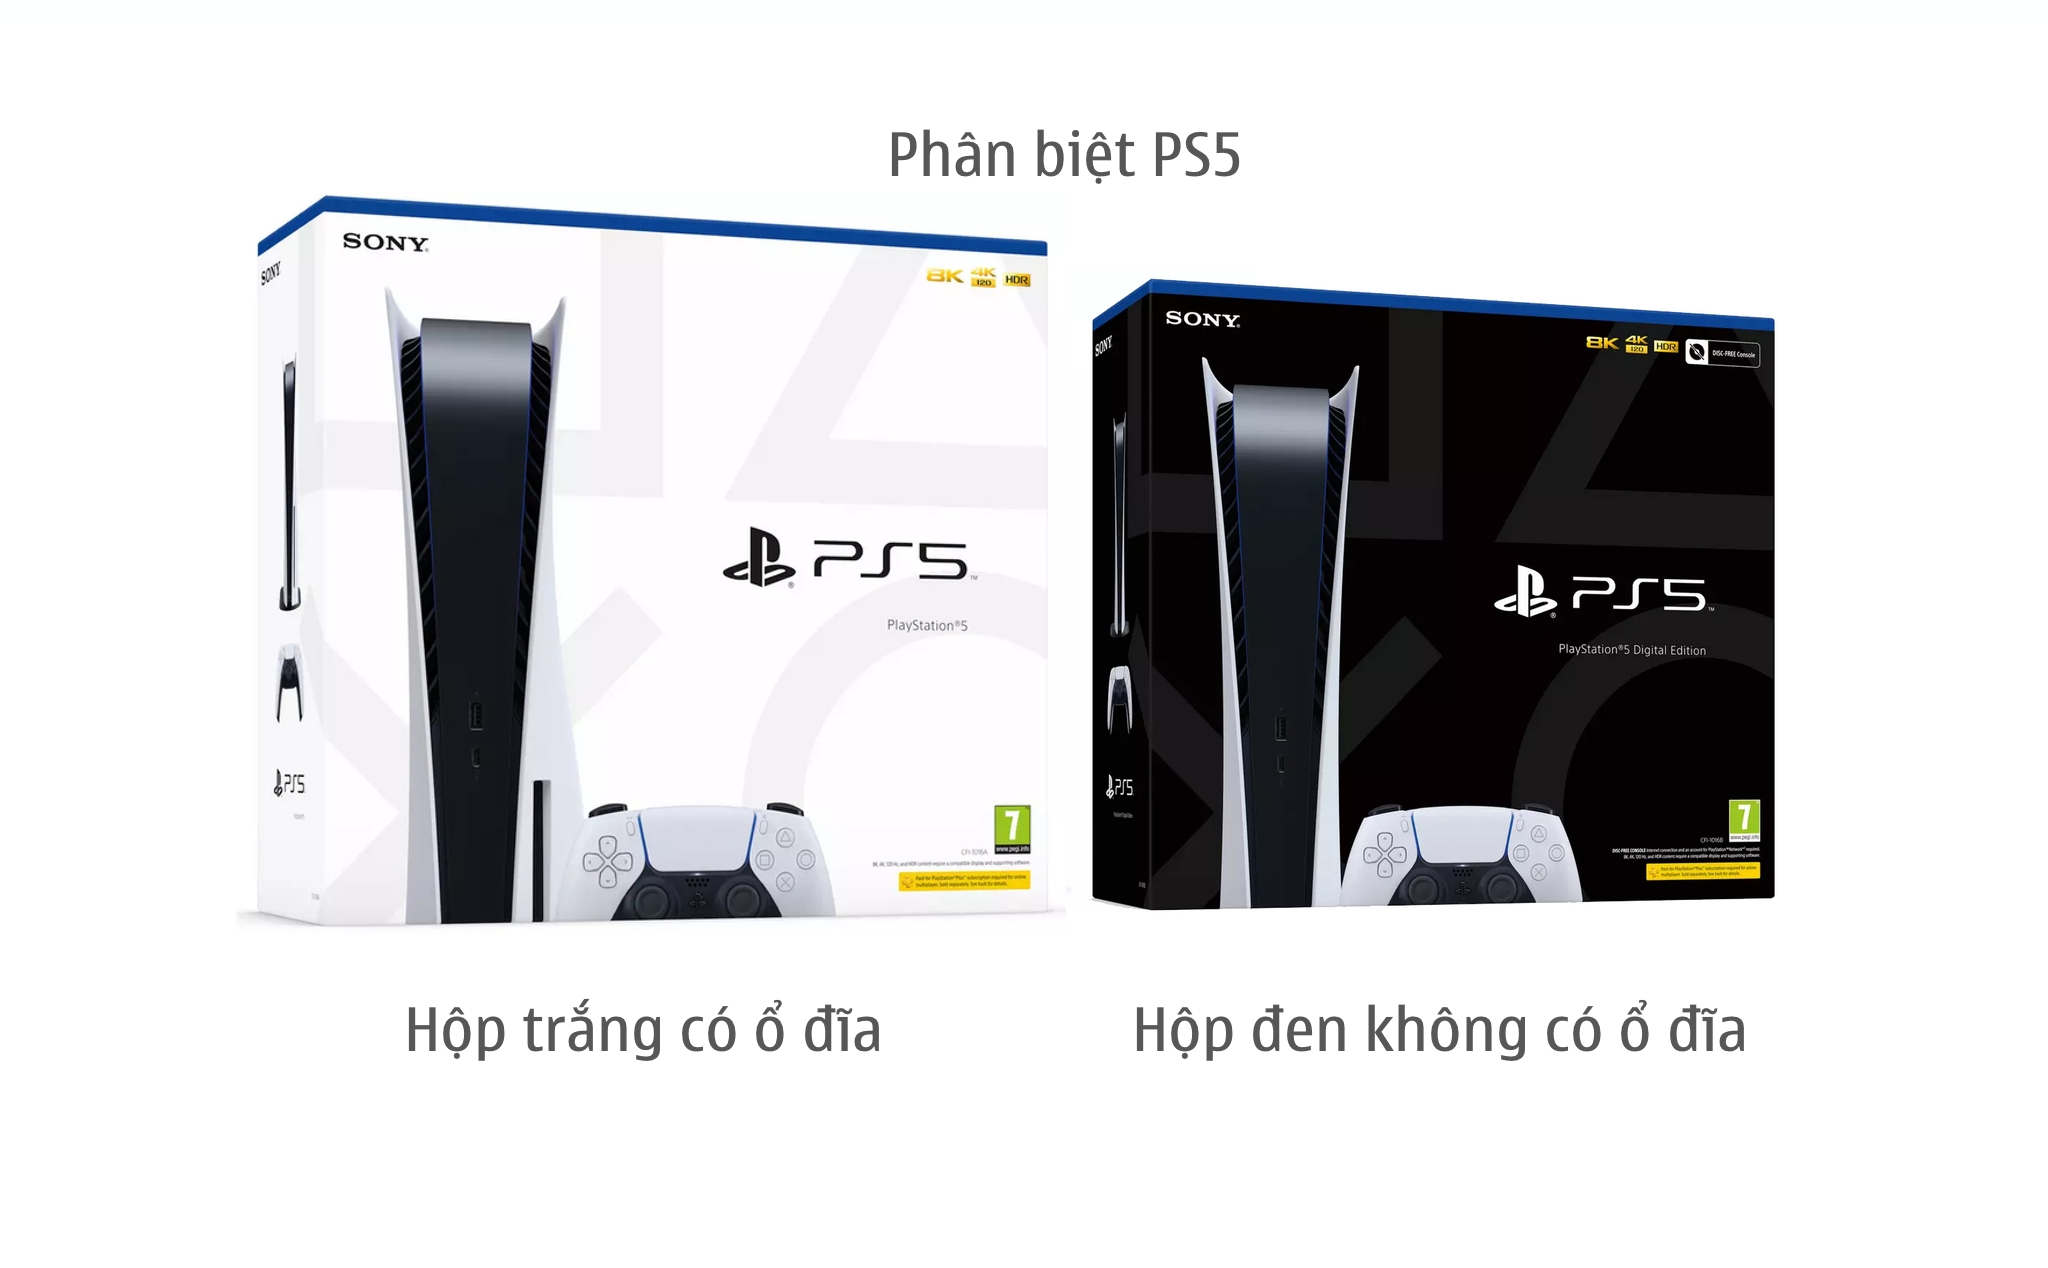 Phân biệt PS5 bản ổ đĩa và bản Digital qua hộp: PS5 có ổ đĩa hộp màu trắng